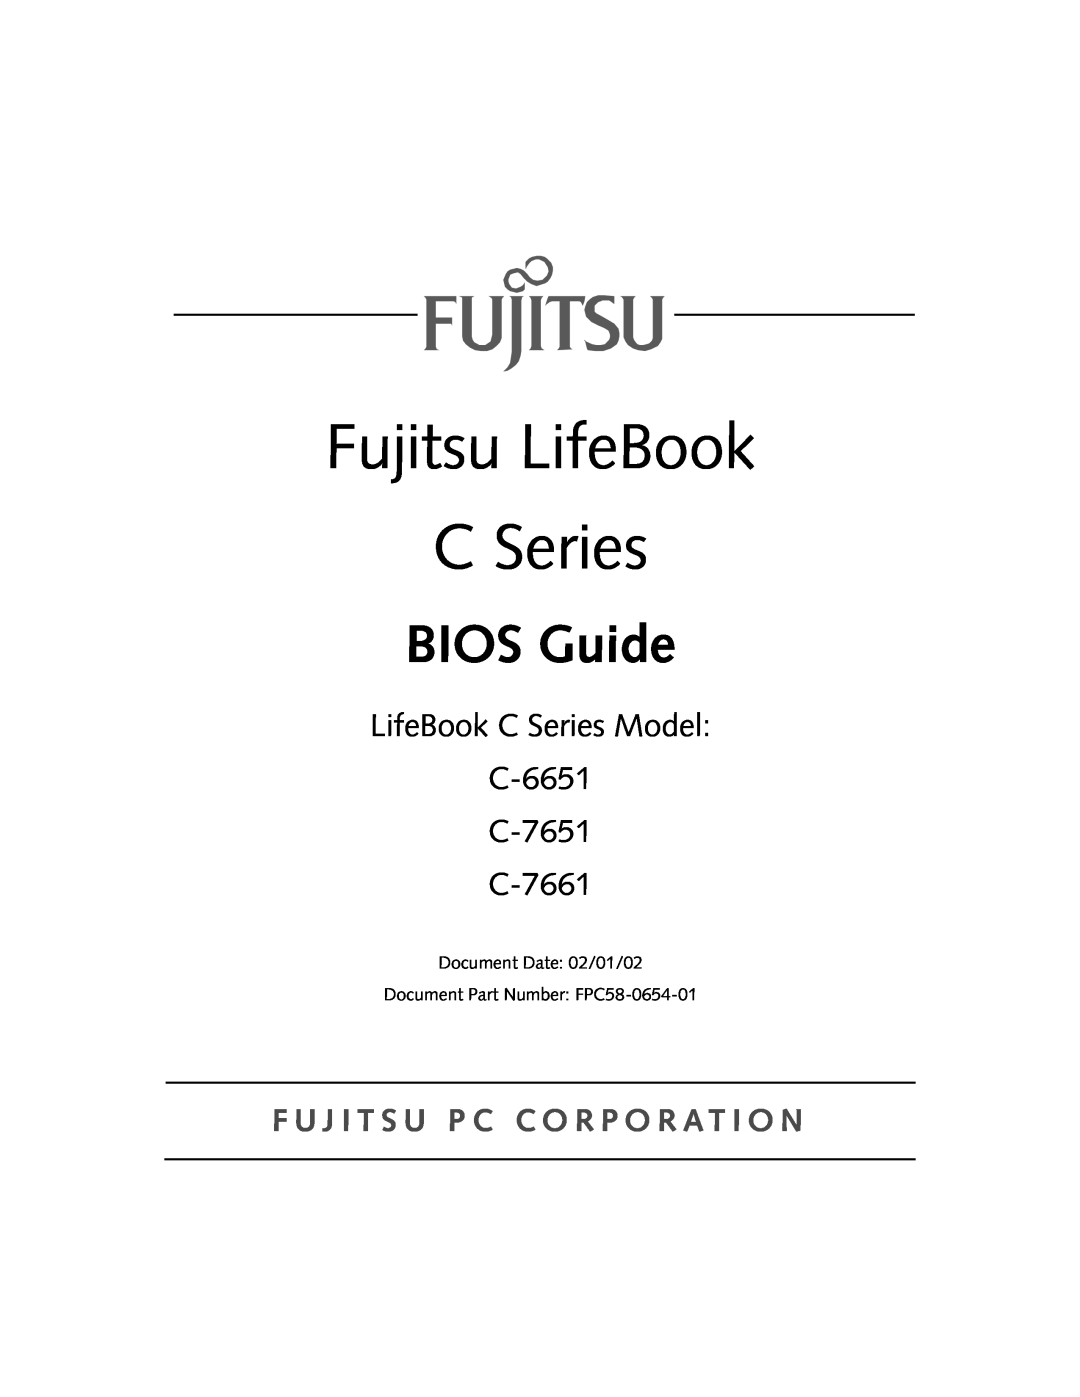 Fujitsu manual Fujitsu LifeBook, BIOS Guide, LifeBook C Series Model C-6651 C-7651 C-7661 